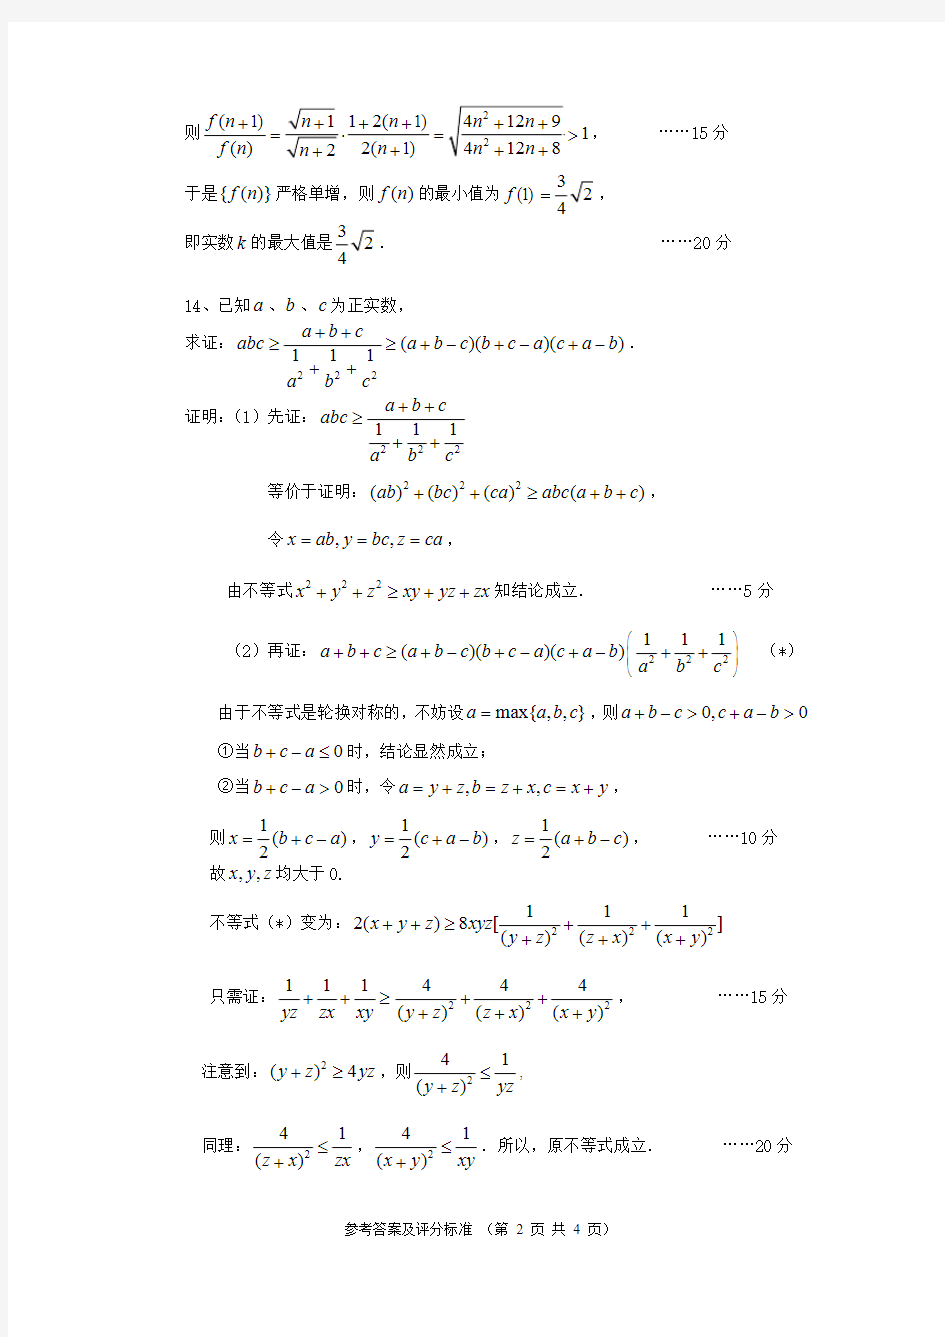 2016年高中数学联赛四川预赛参考答案及评分细则 (1)